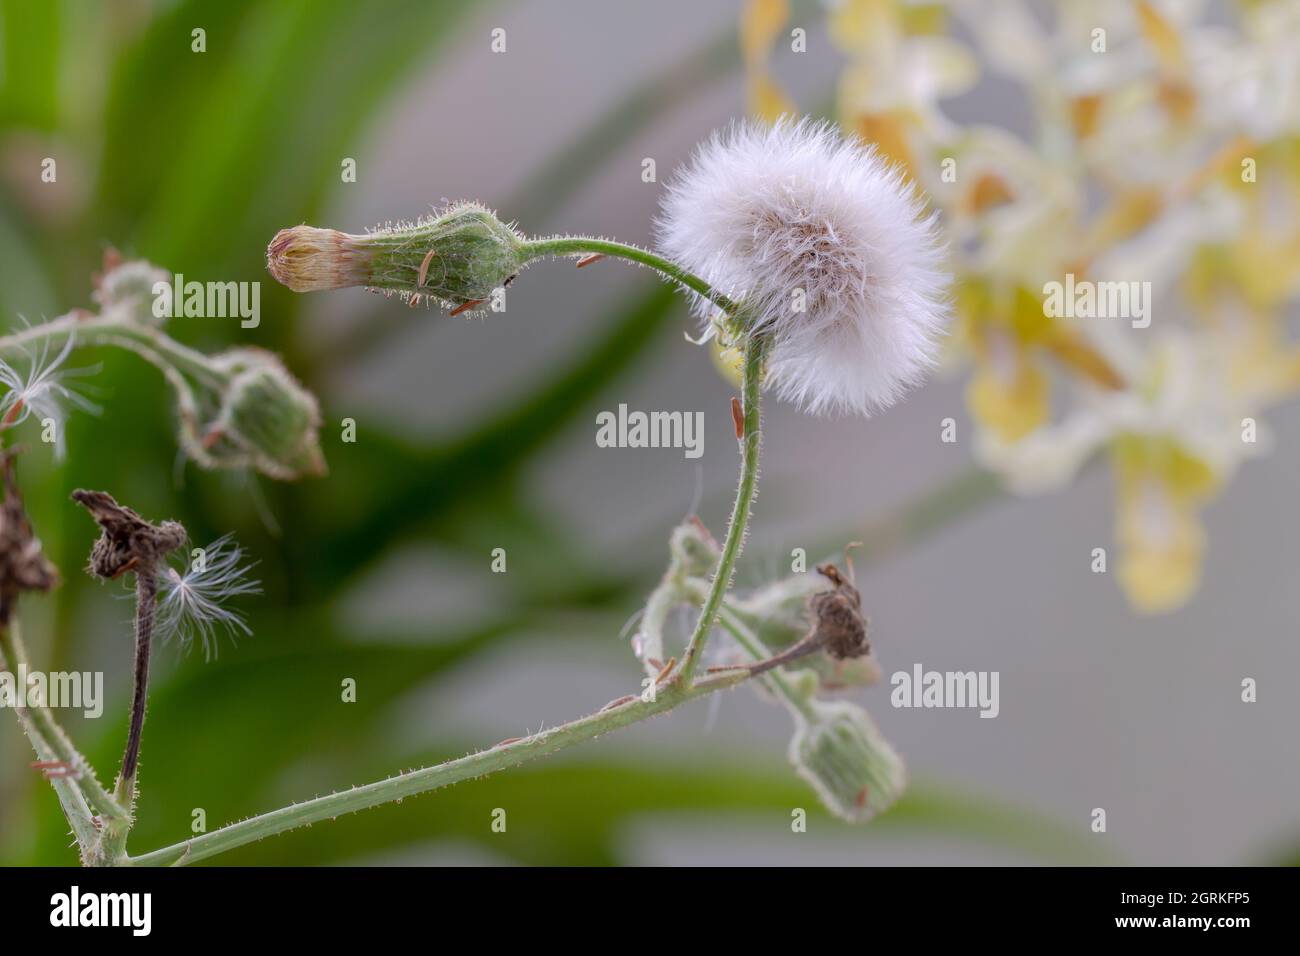 Fiore di tasselflower lilla, di forma rotonda bianca, pronto a far volare i suoi semi Foto Stock